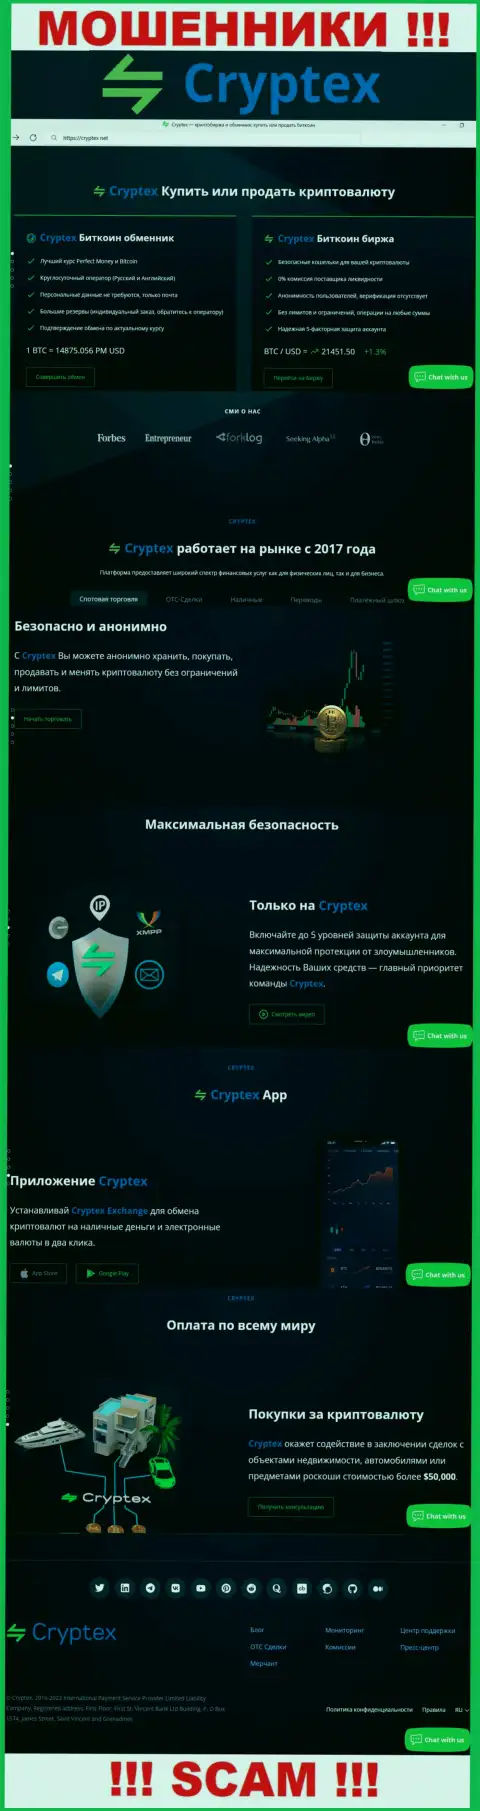 Скрин официального web-ресурса мошеннической компании КриптексНет